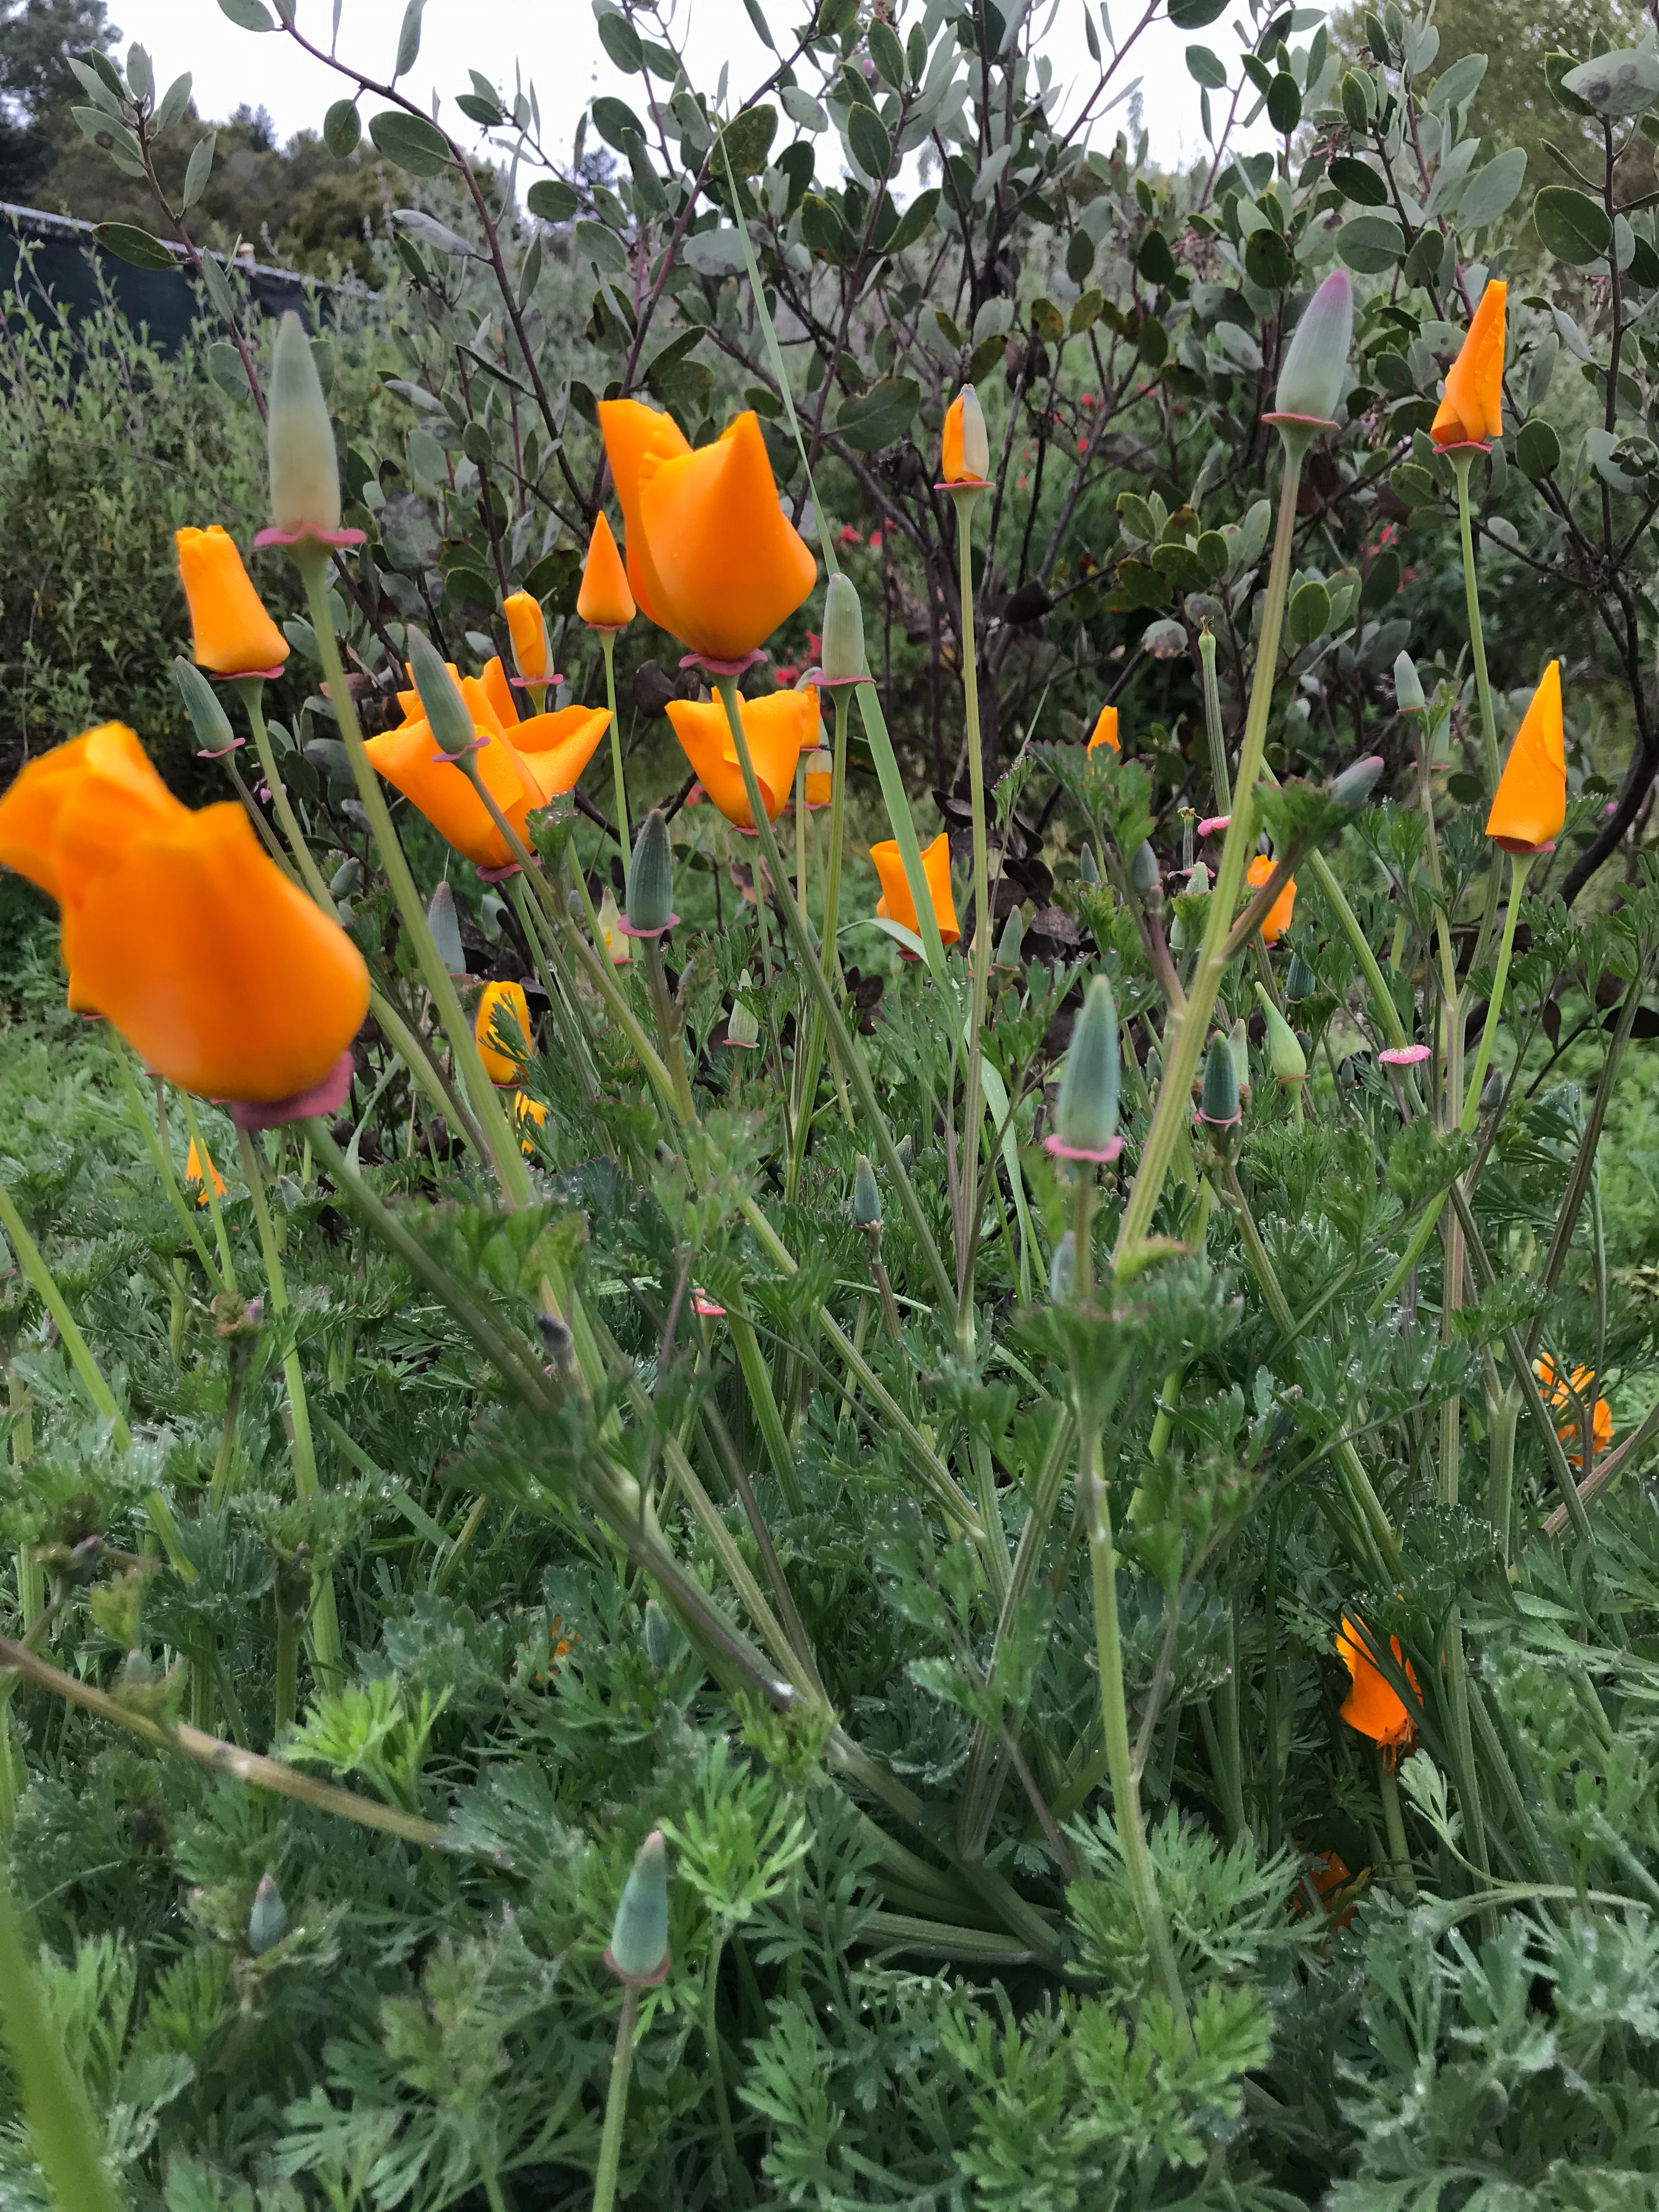 Eschscholzia californica (California poppy)